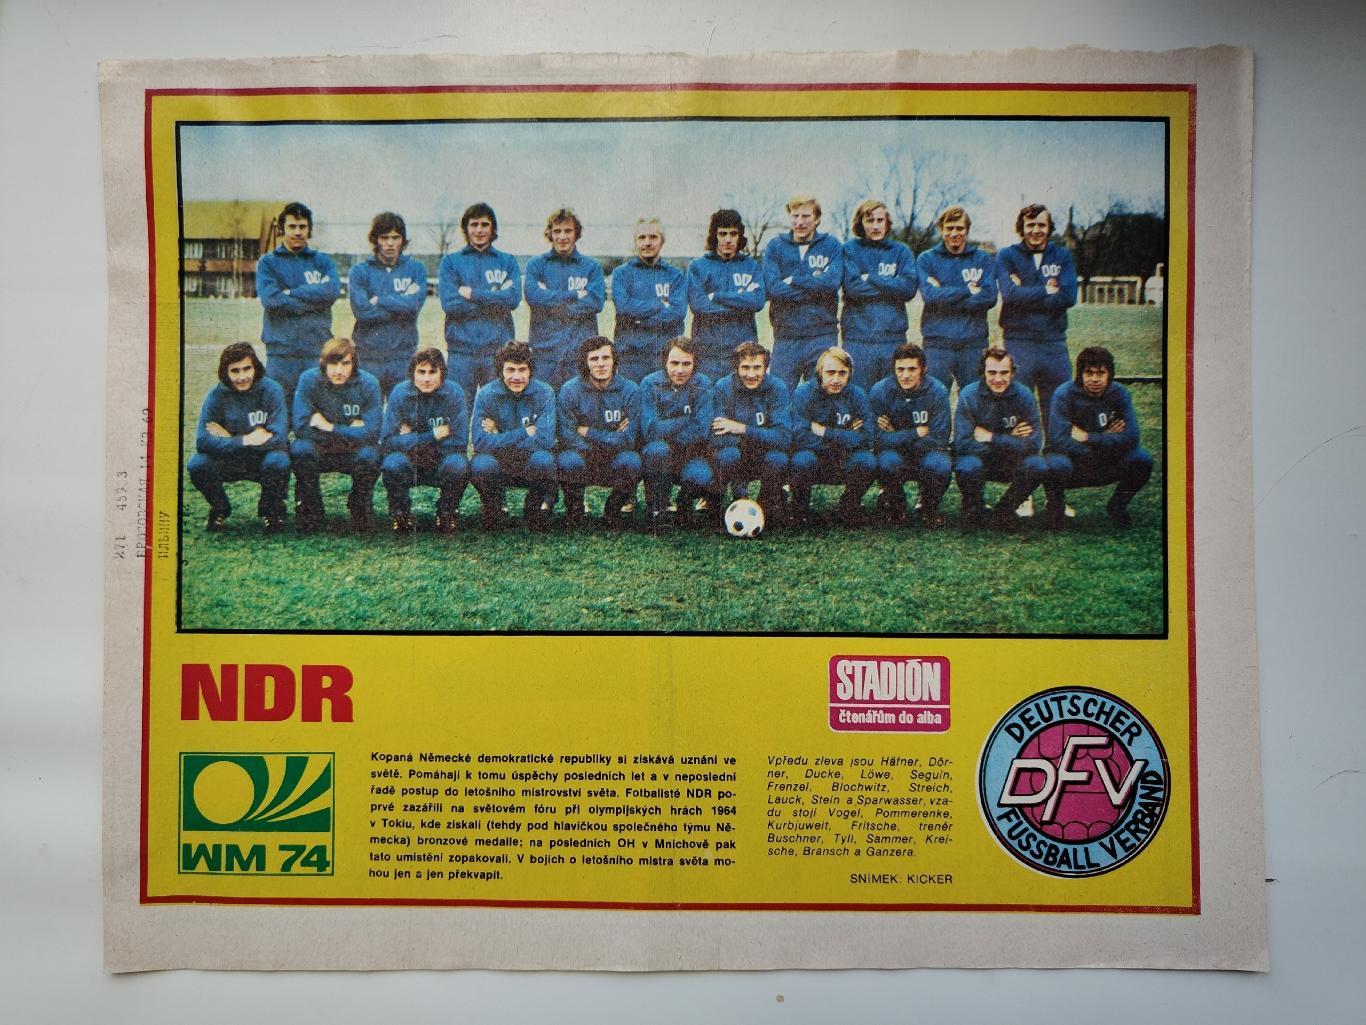 Постер. Сборная ГДР/Германия 1974 ЧМ (журнал Стадион/Stadion Чехословакия)